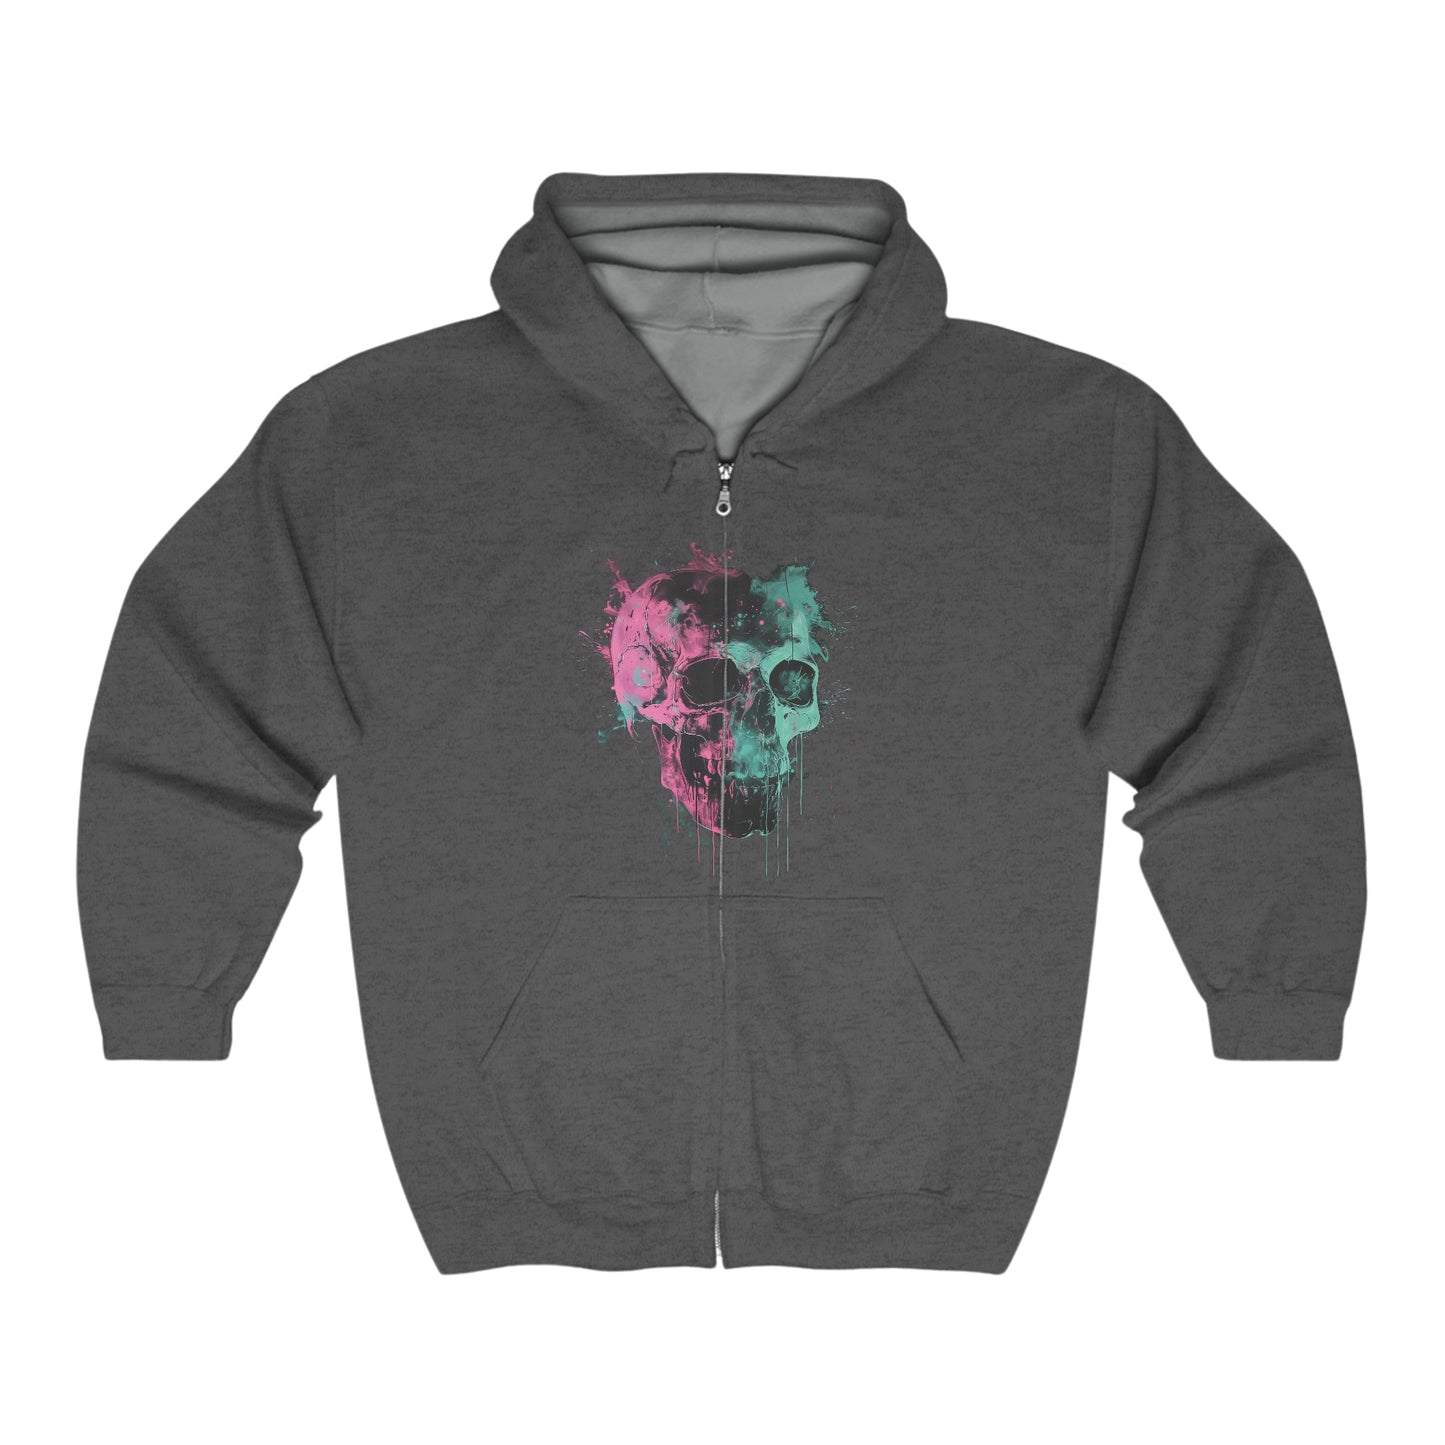 Skull zip up Unisex Heavy Blend Full Zip Hooded Sweatshirt hoodie Trippy Watercolor Long Sleeve Tee, Dripping AI Made Design Dark Style Edgy